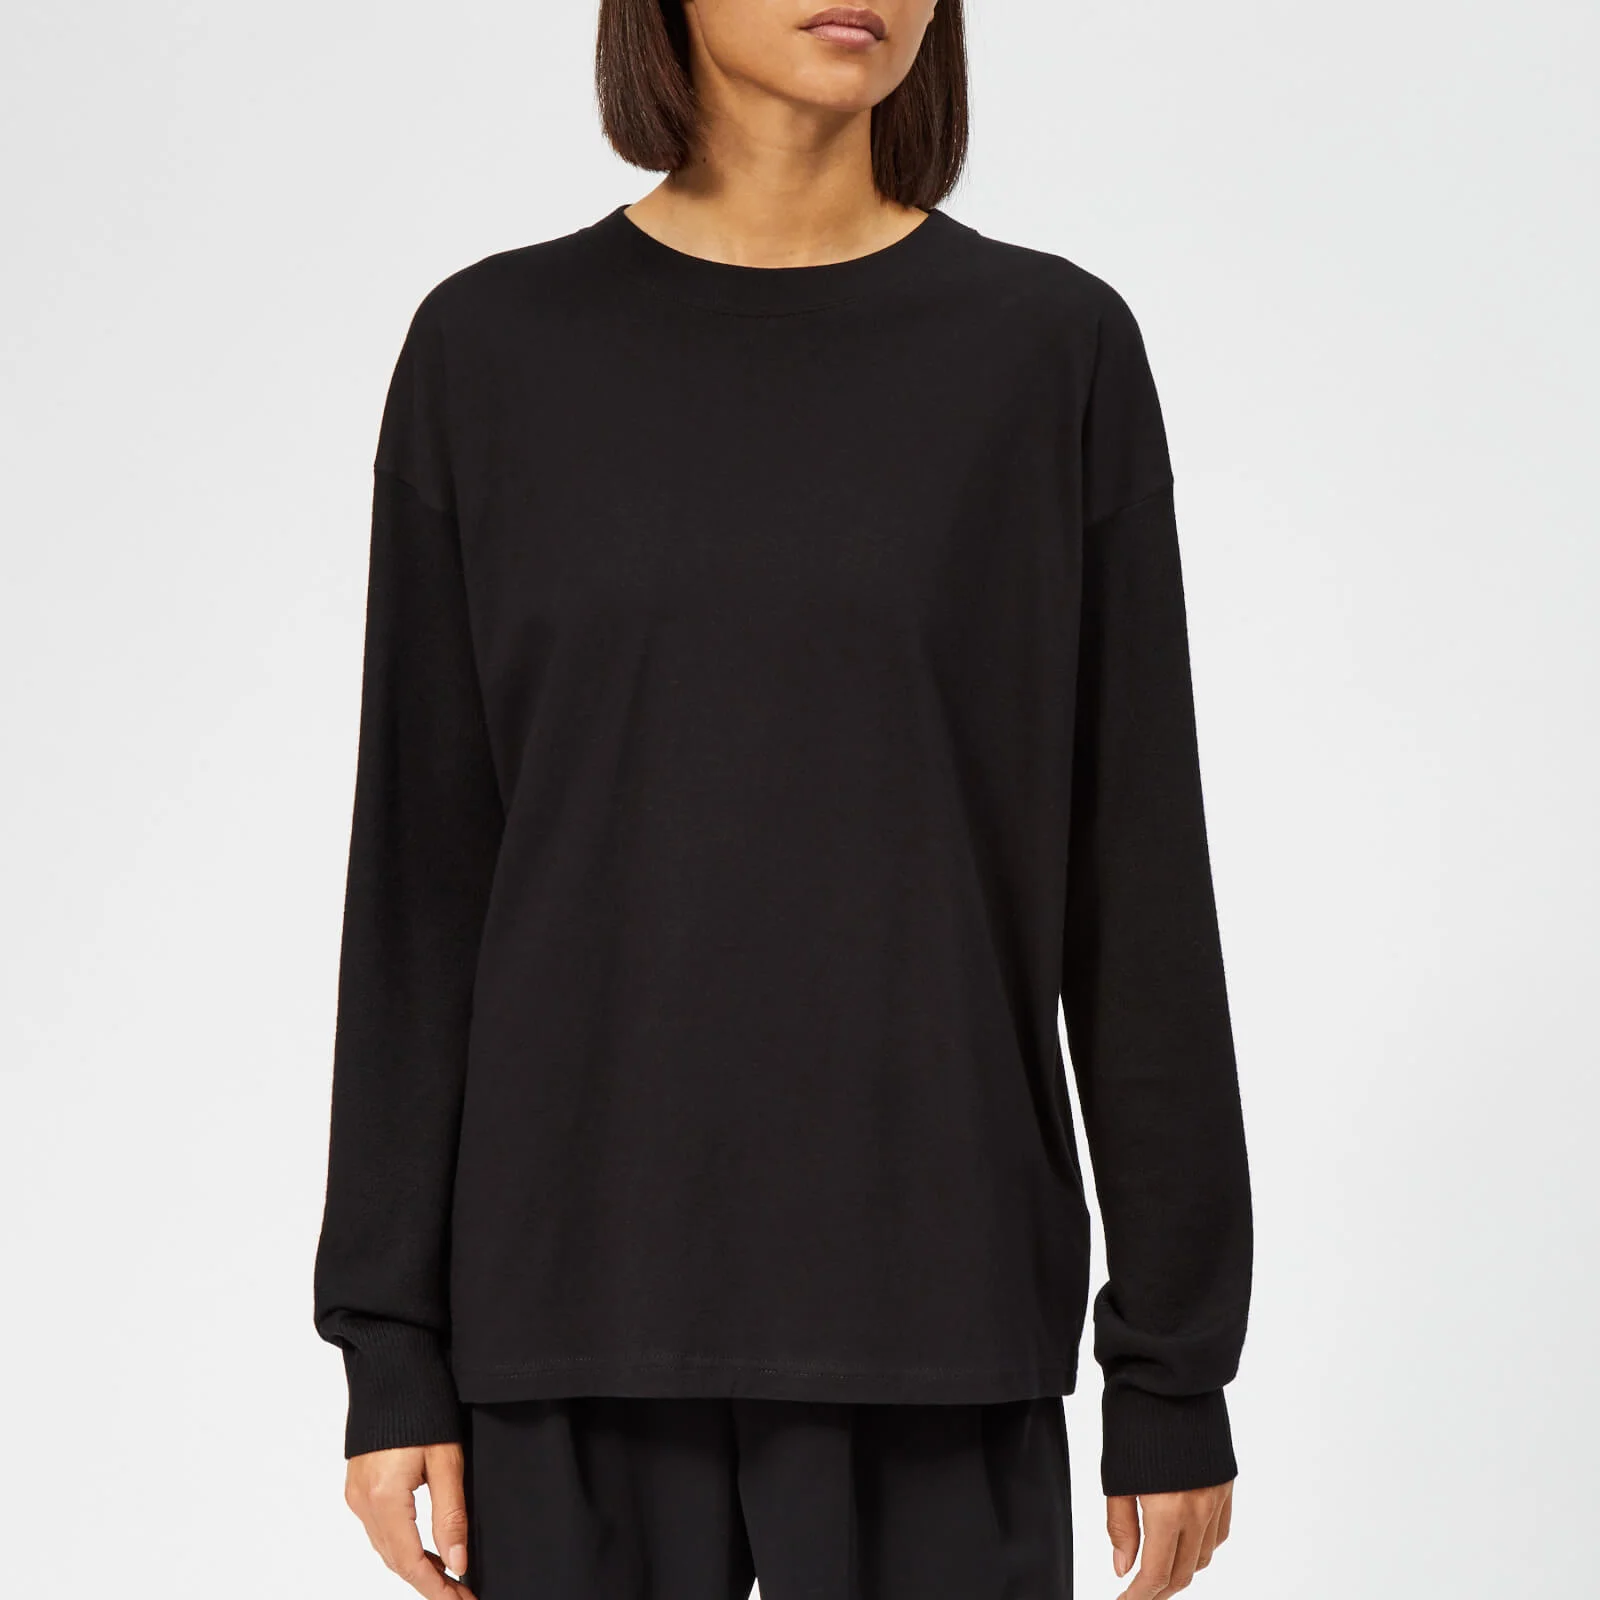 MM6 Maison Margiela Women's Long Sleeve T-Shirt with Logo Back - Black/Black Image 1